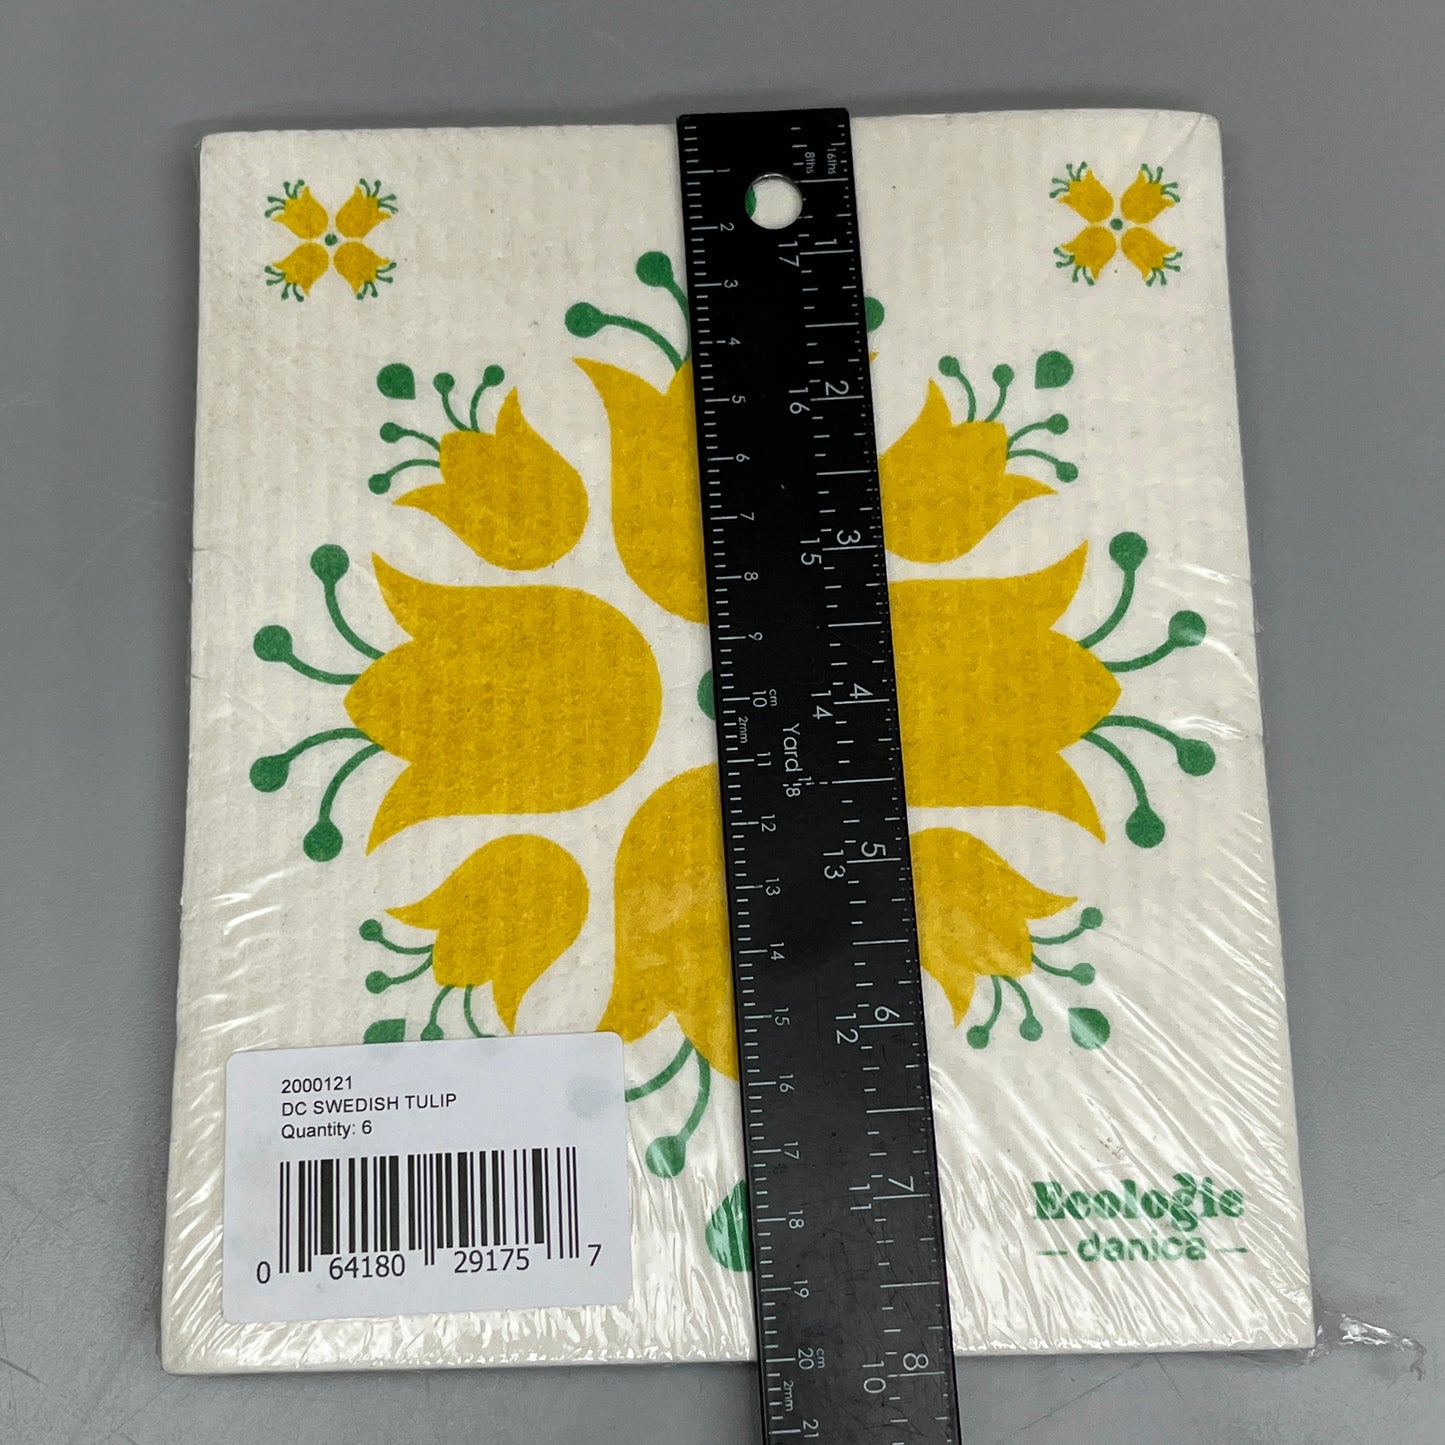 DANICA ECOLOGIE 6-PACK! Swedish Tulip Dishcloth Yellow Flower Print 200121 (New)